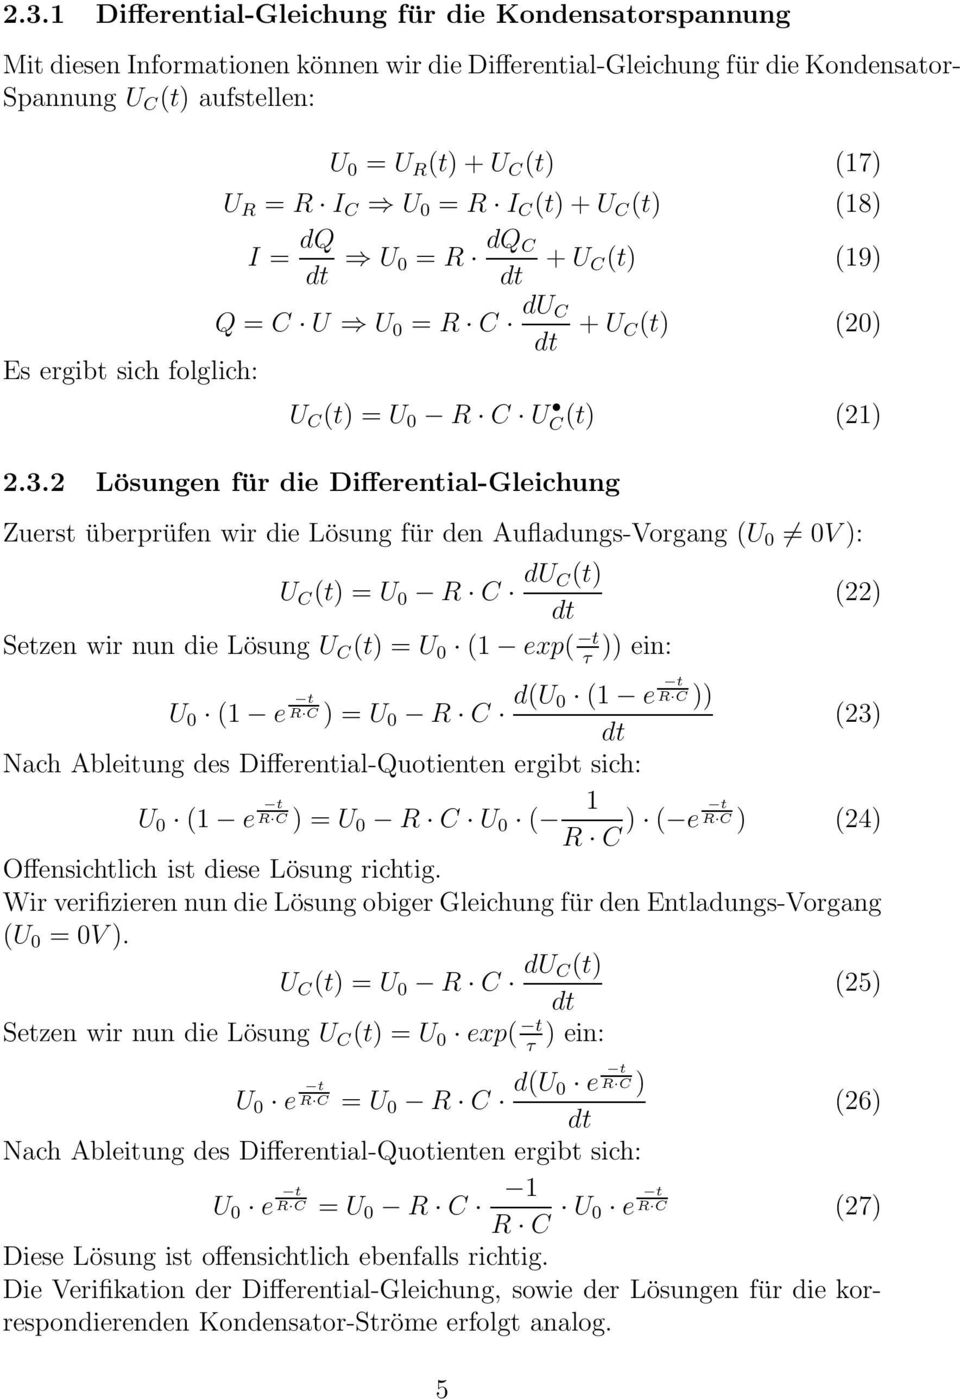 2 Lösungen für die Differential-Gleichung Zuerst überprüfen wir die Lösung für den Aufladungs-Vorgang (U 0 0V ): U C (t) = U 0 R C du C(t) Setzen wir nun die Lösung U C (t) = U 0 ( exp( t )) ein: τ U